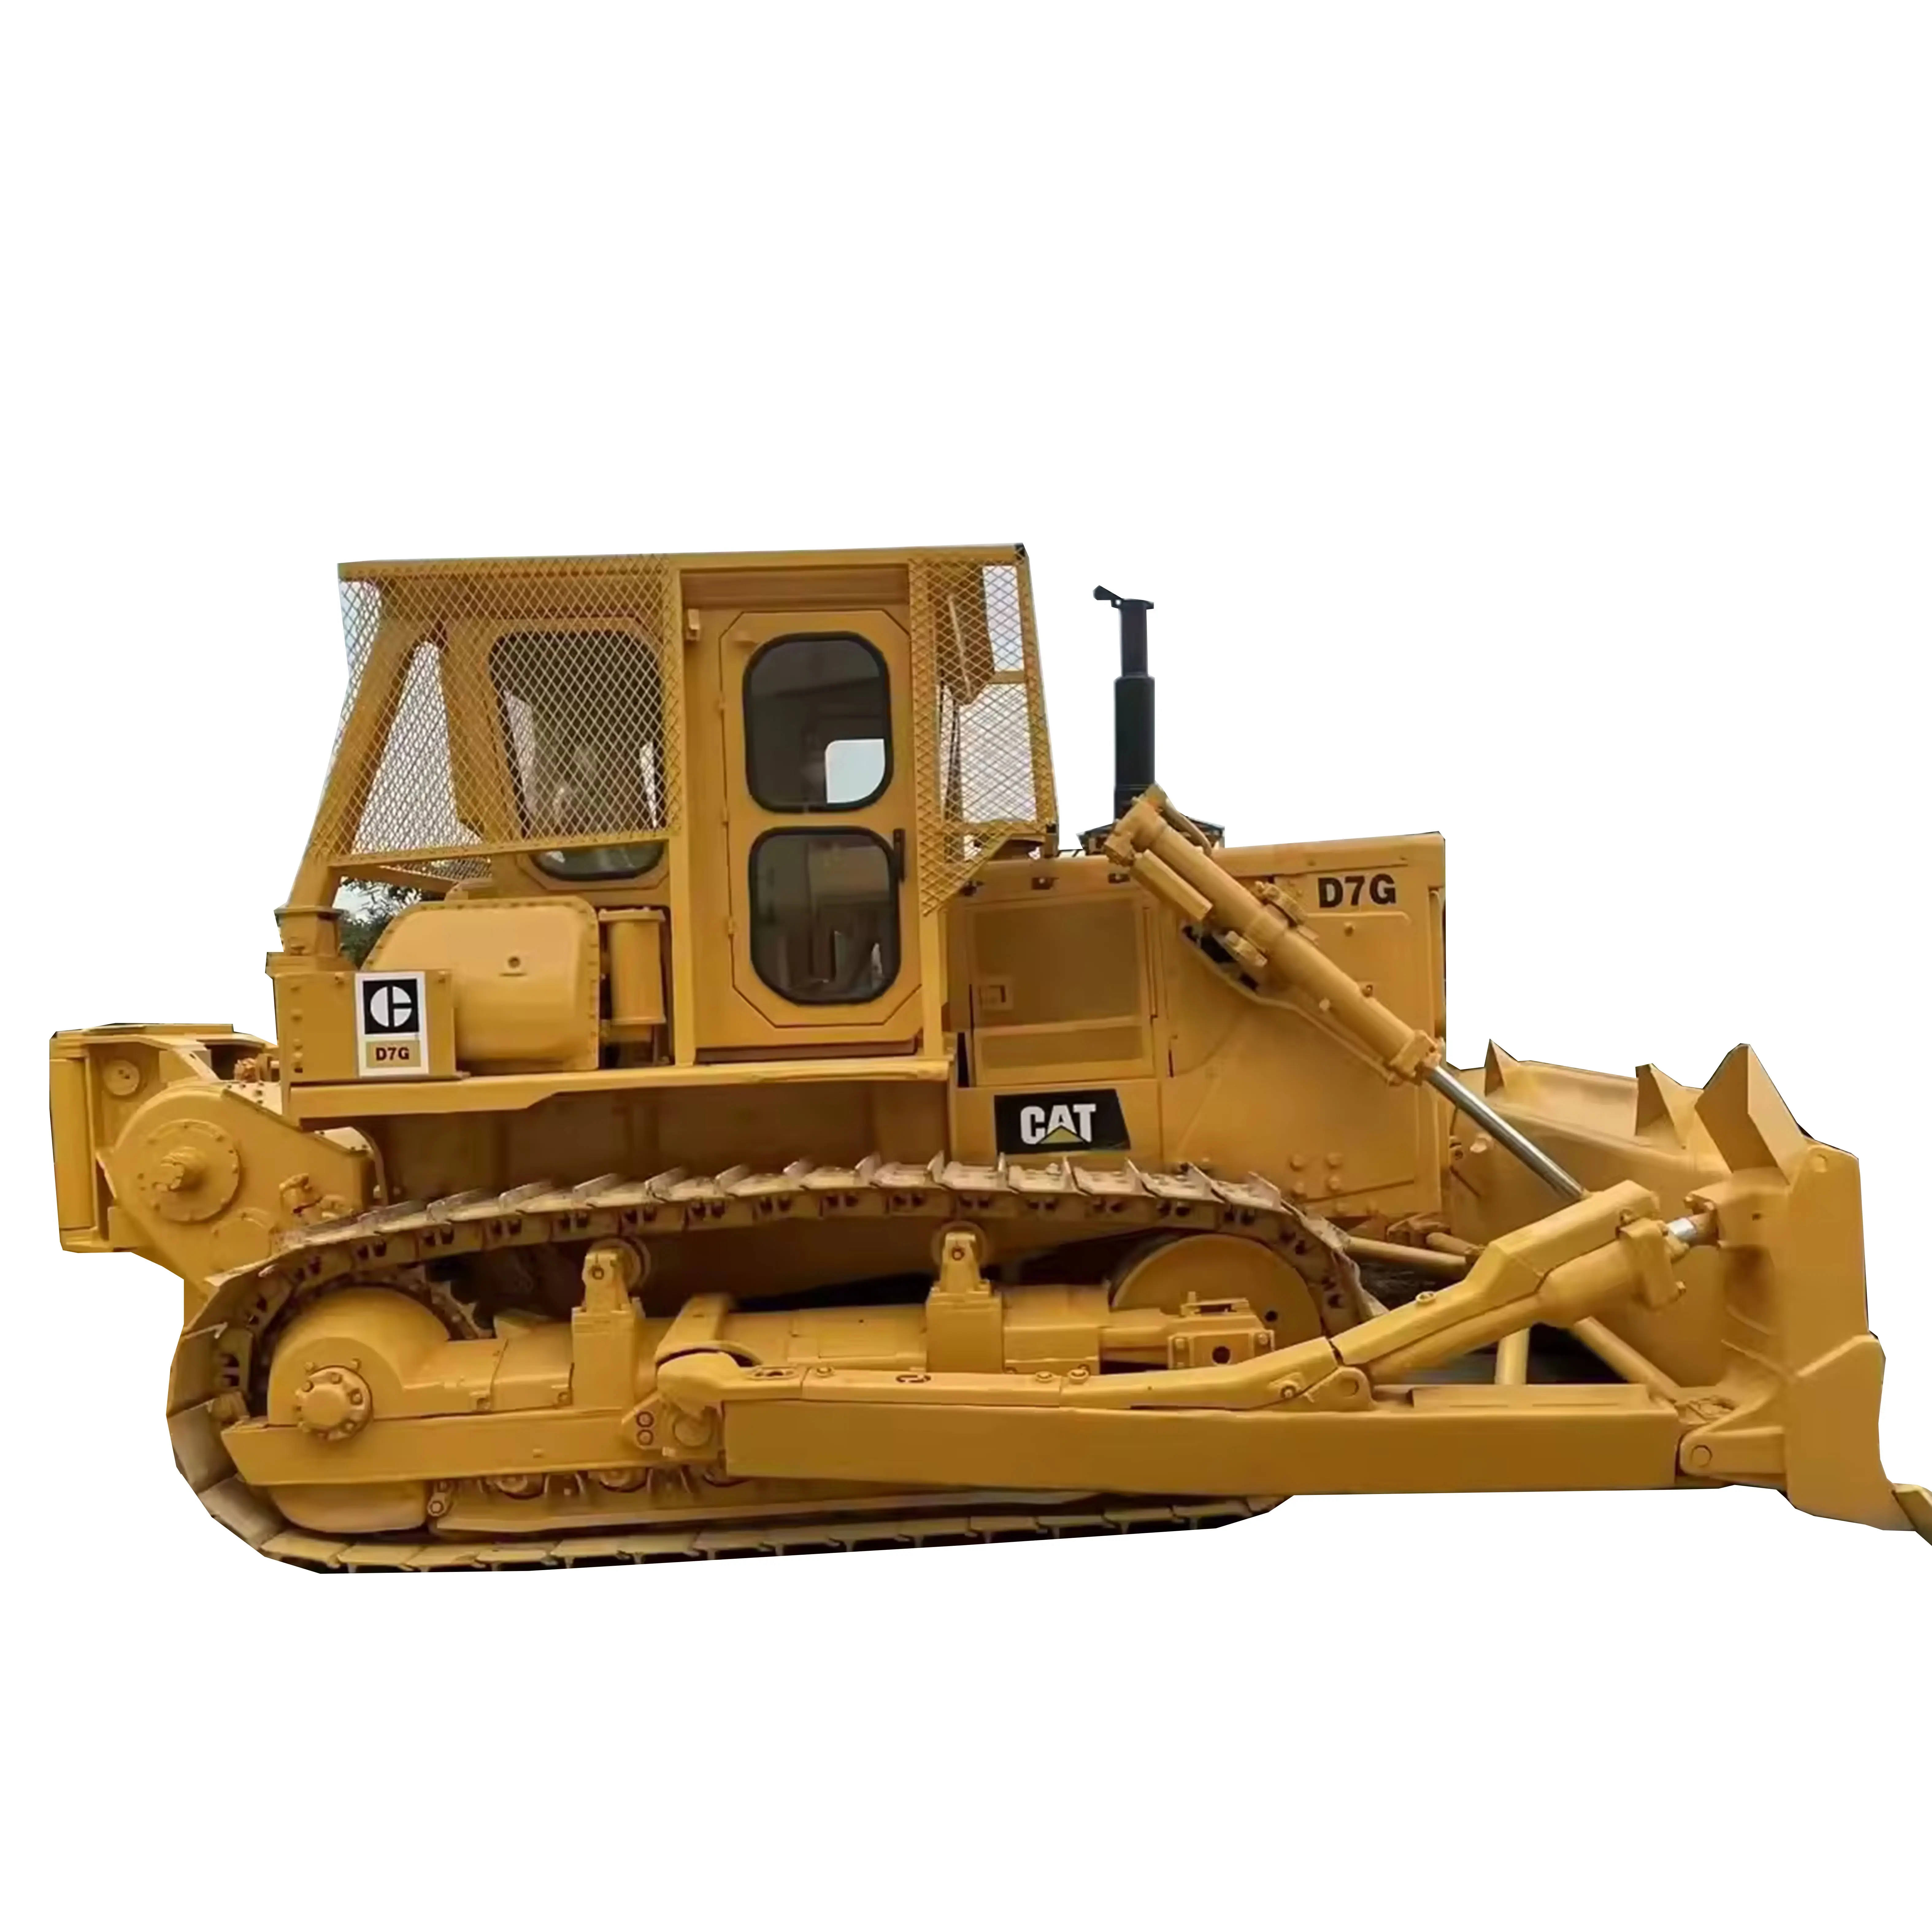 Sử dụng Xe ủi đất thứ hai tay xe ủi d7g mèo Crawler máy kéo d7g sử dụng Sâu Bướm Xe ủi đất